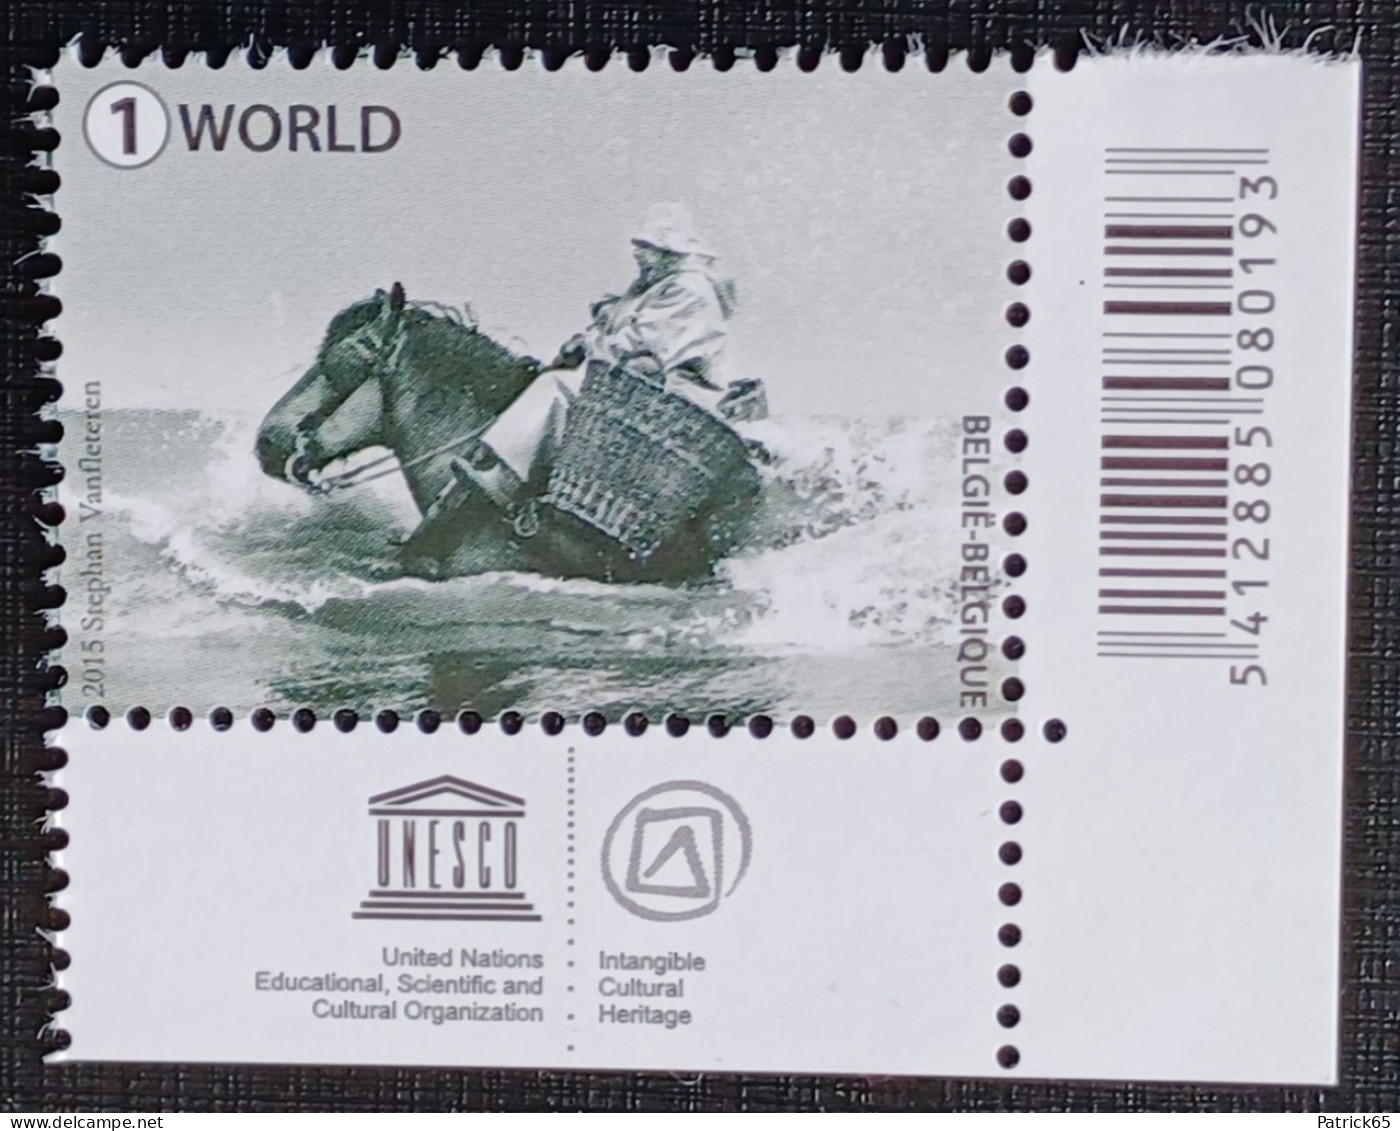 Belgie 2015 Obp.nr.4538 Garnaalvissers Te Paard - Unesco Werelderfgoed. MNH - Postfris - Unused Stamps